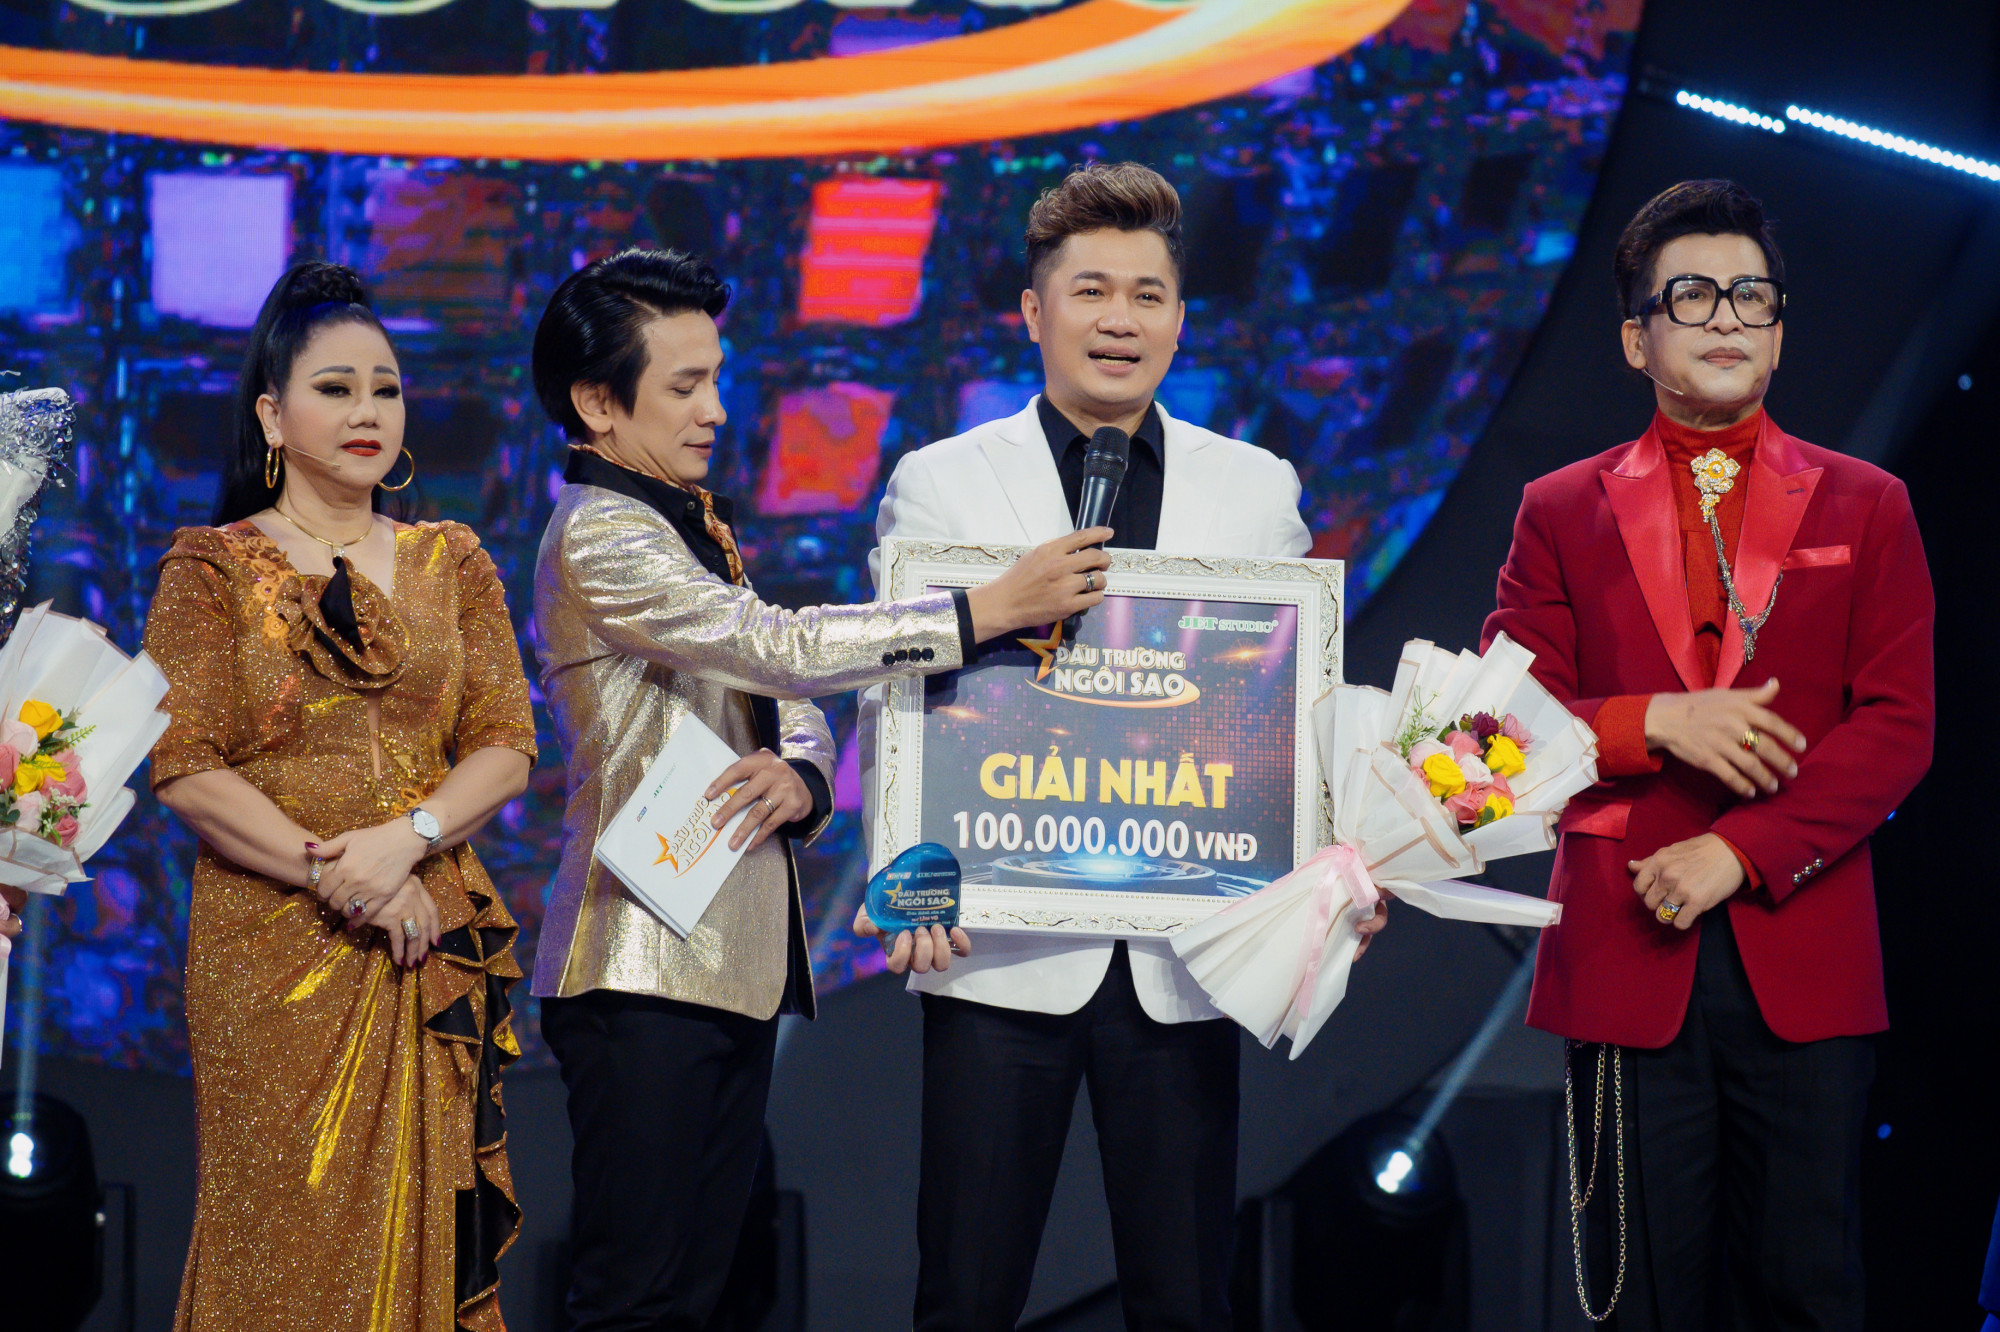 Ca sĩ Lâm Vũ giành giải nhất tại Đấu trường ngôi sao